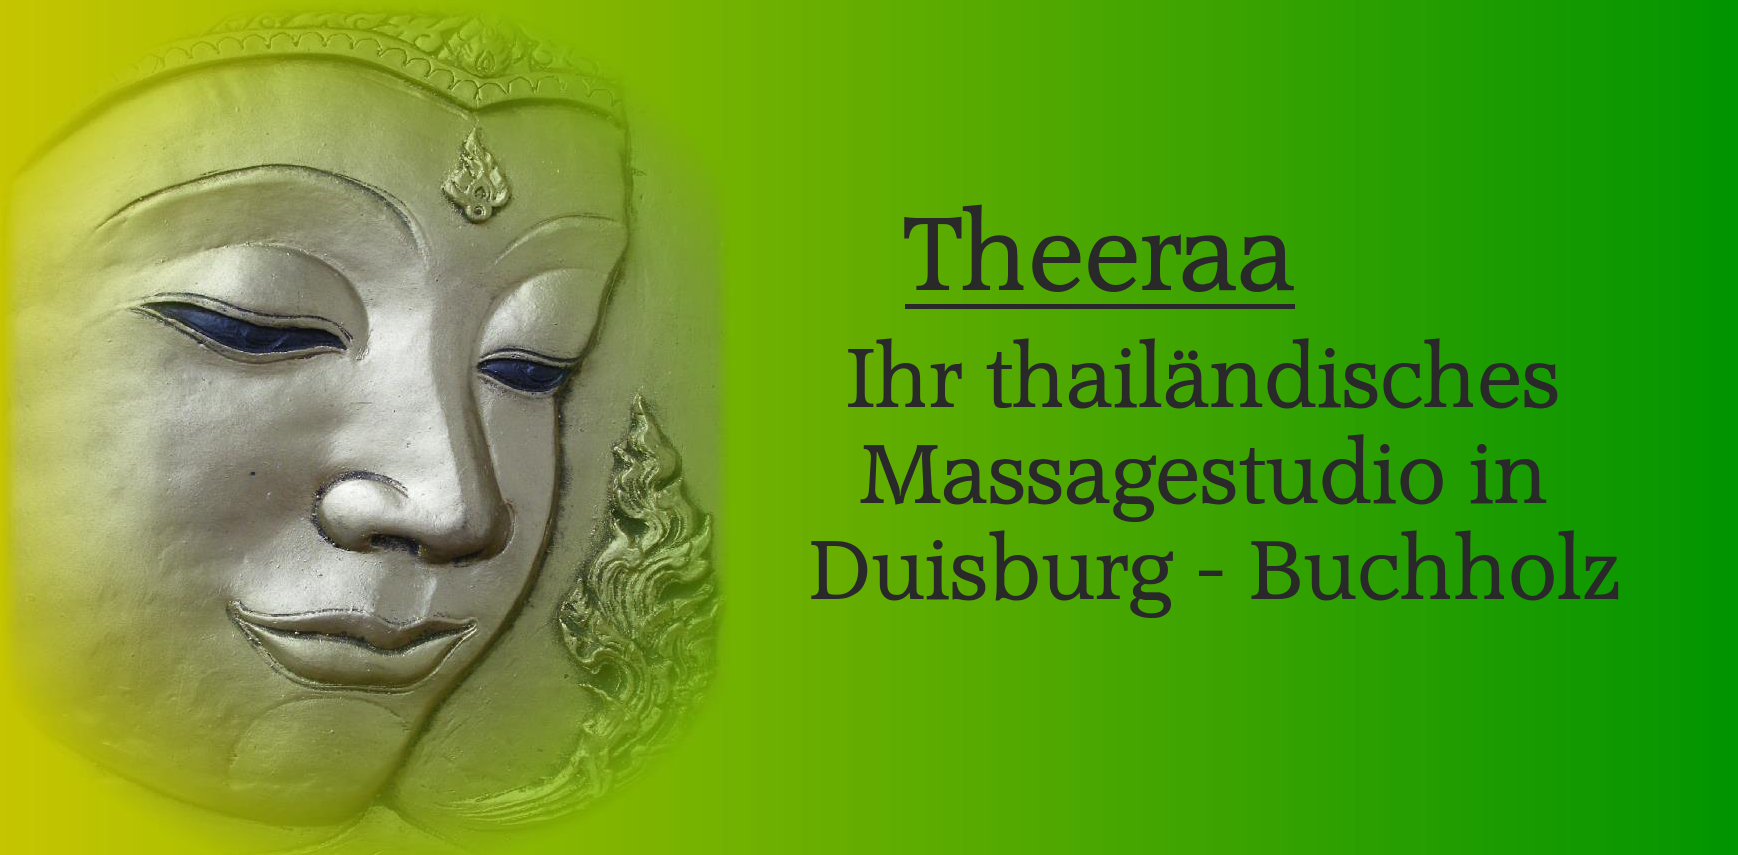 Duisburg thaimassage Startseite